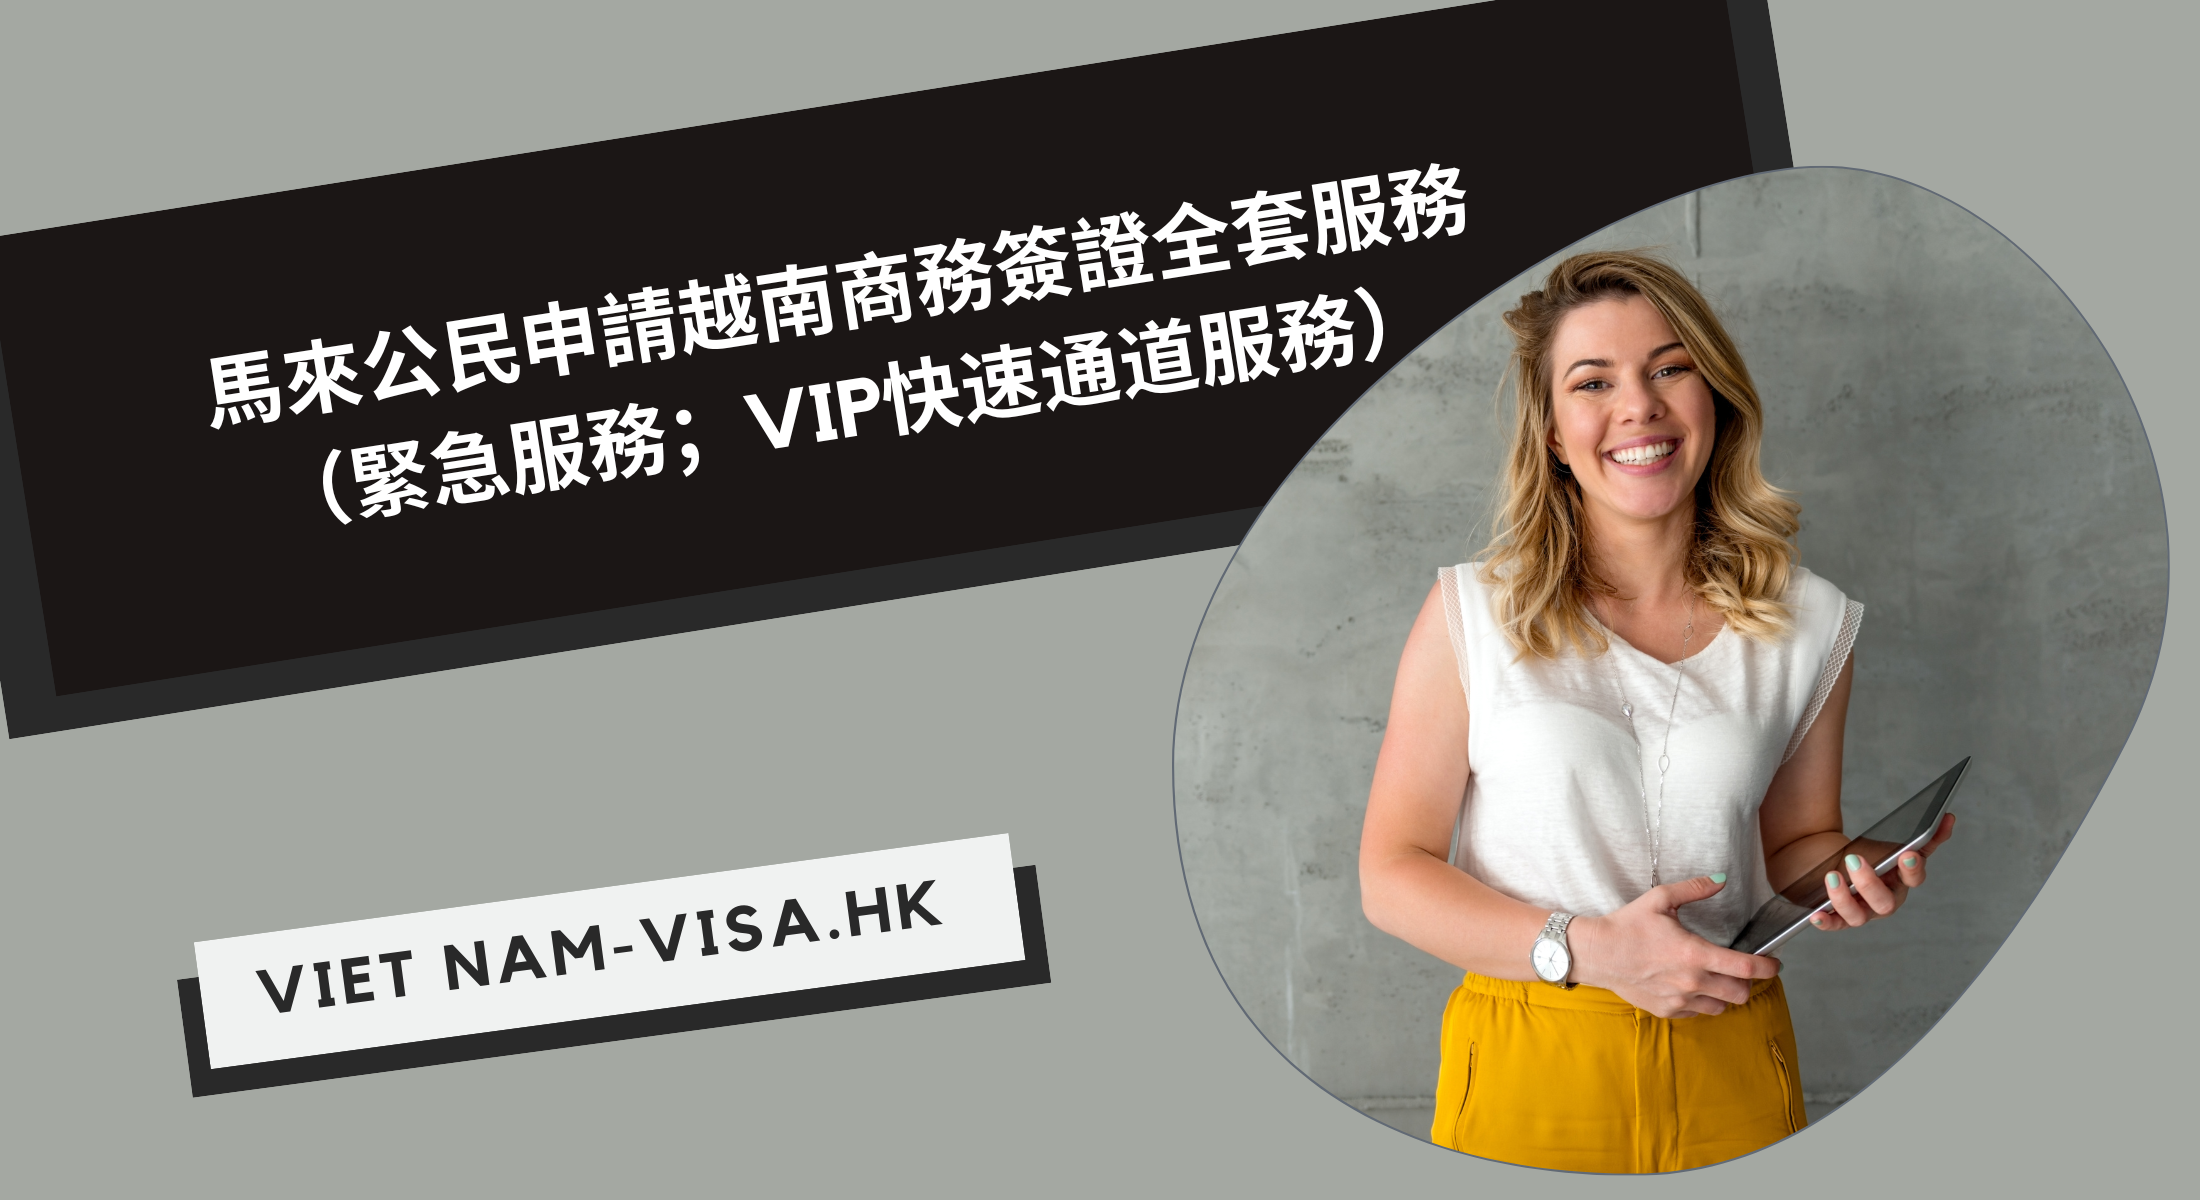 馬來公民申請越南商務簽證全套服務